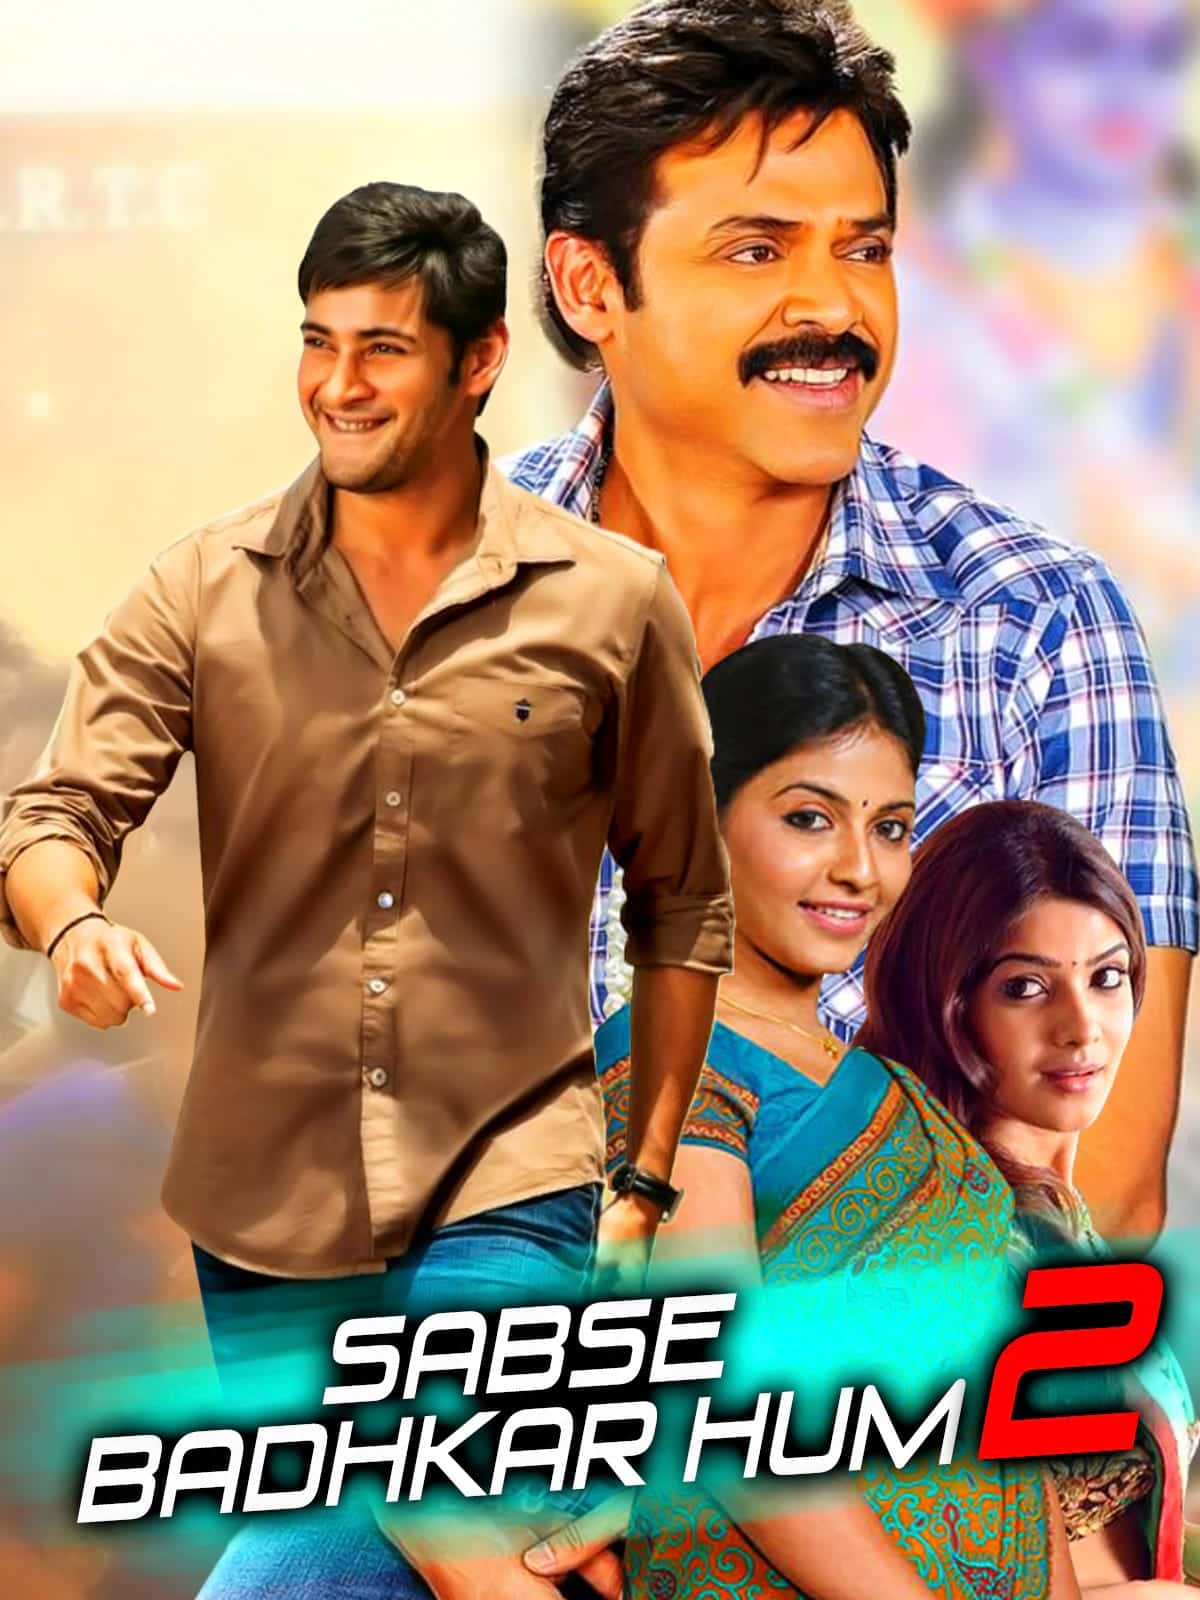 Sabse Badhkar Hum 2 (Seethamma Vakitlo Sirimalle Chettu) 2013 UnCut Dual Audio [Hindi - Telugu] Full Movie BluRay ESub